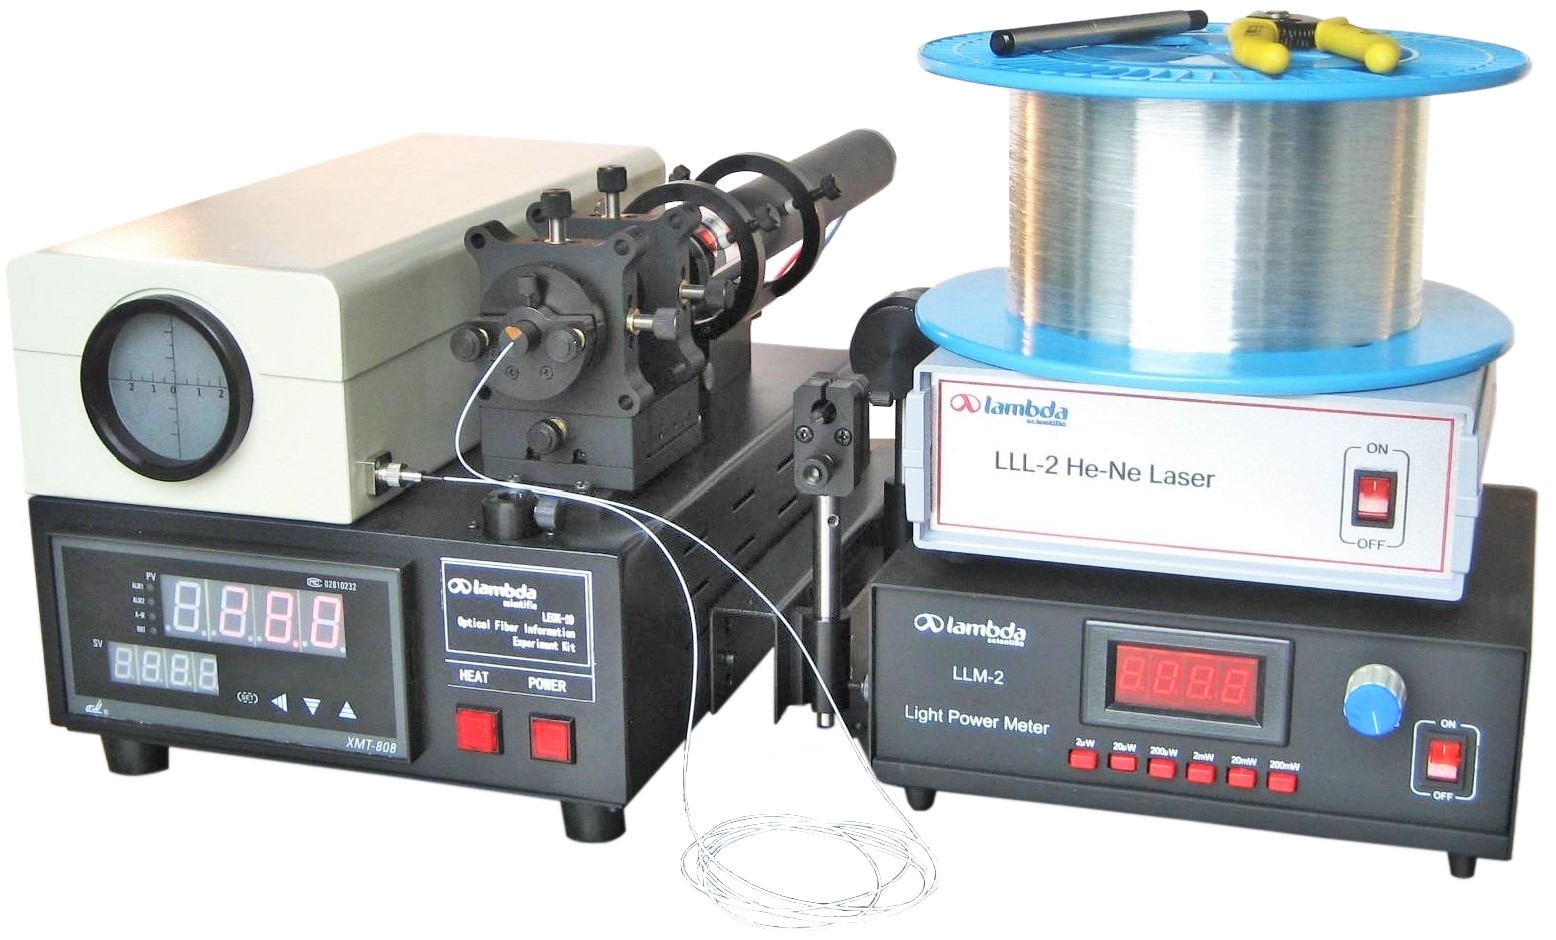 LEOK-20 Fiber Communication Experiment Kit - Basic Model